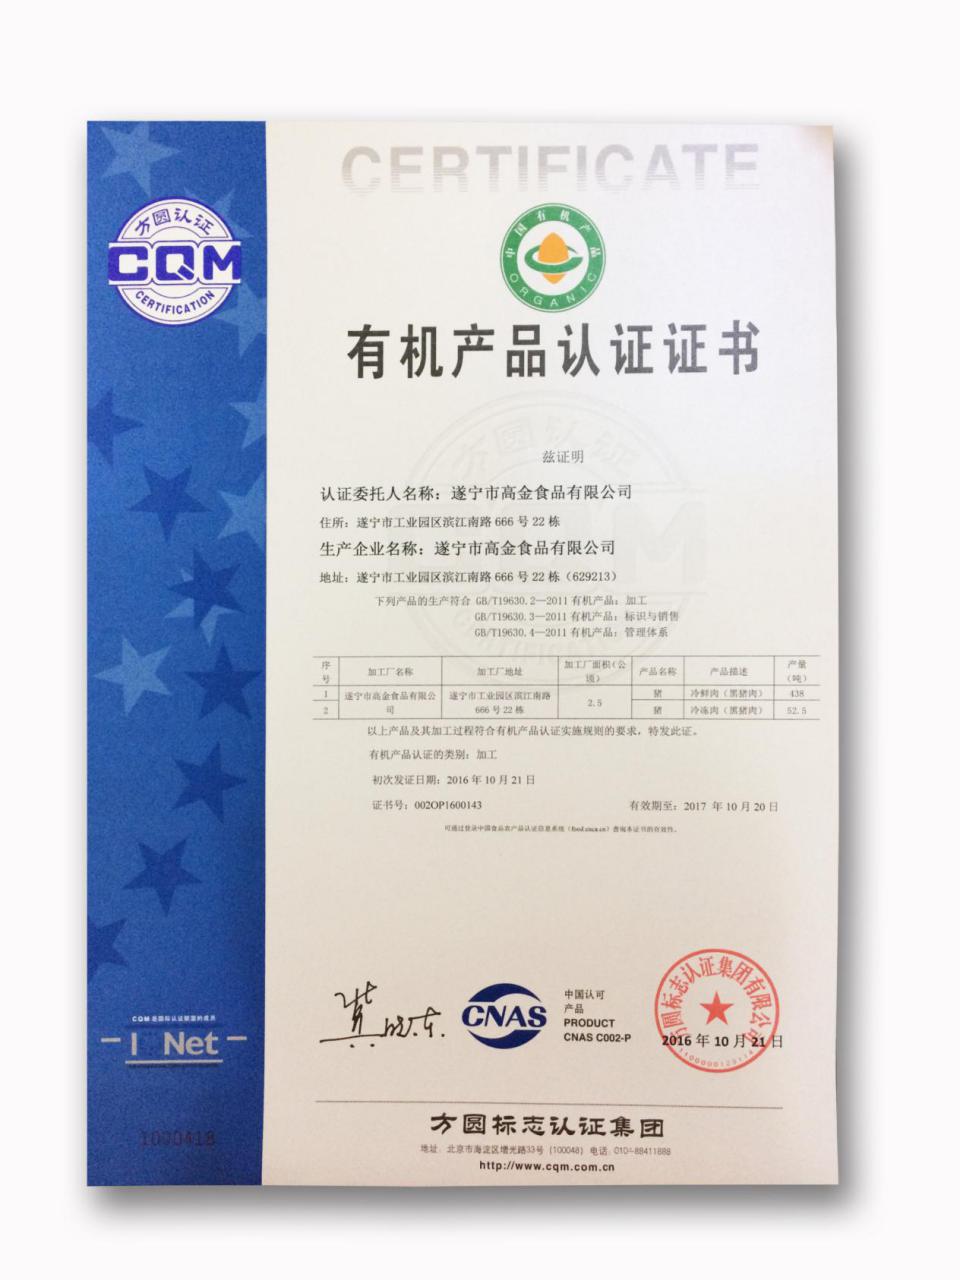 食品庄园黑猪肉肉类顺利通过官方认证,荣获"有机产品认证证书"的资质